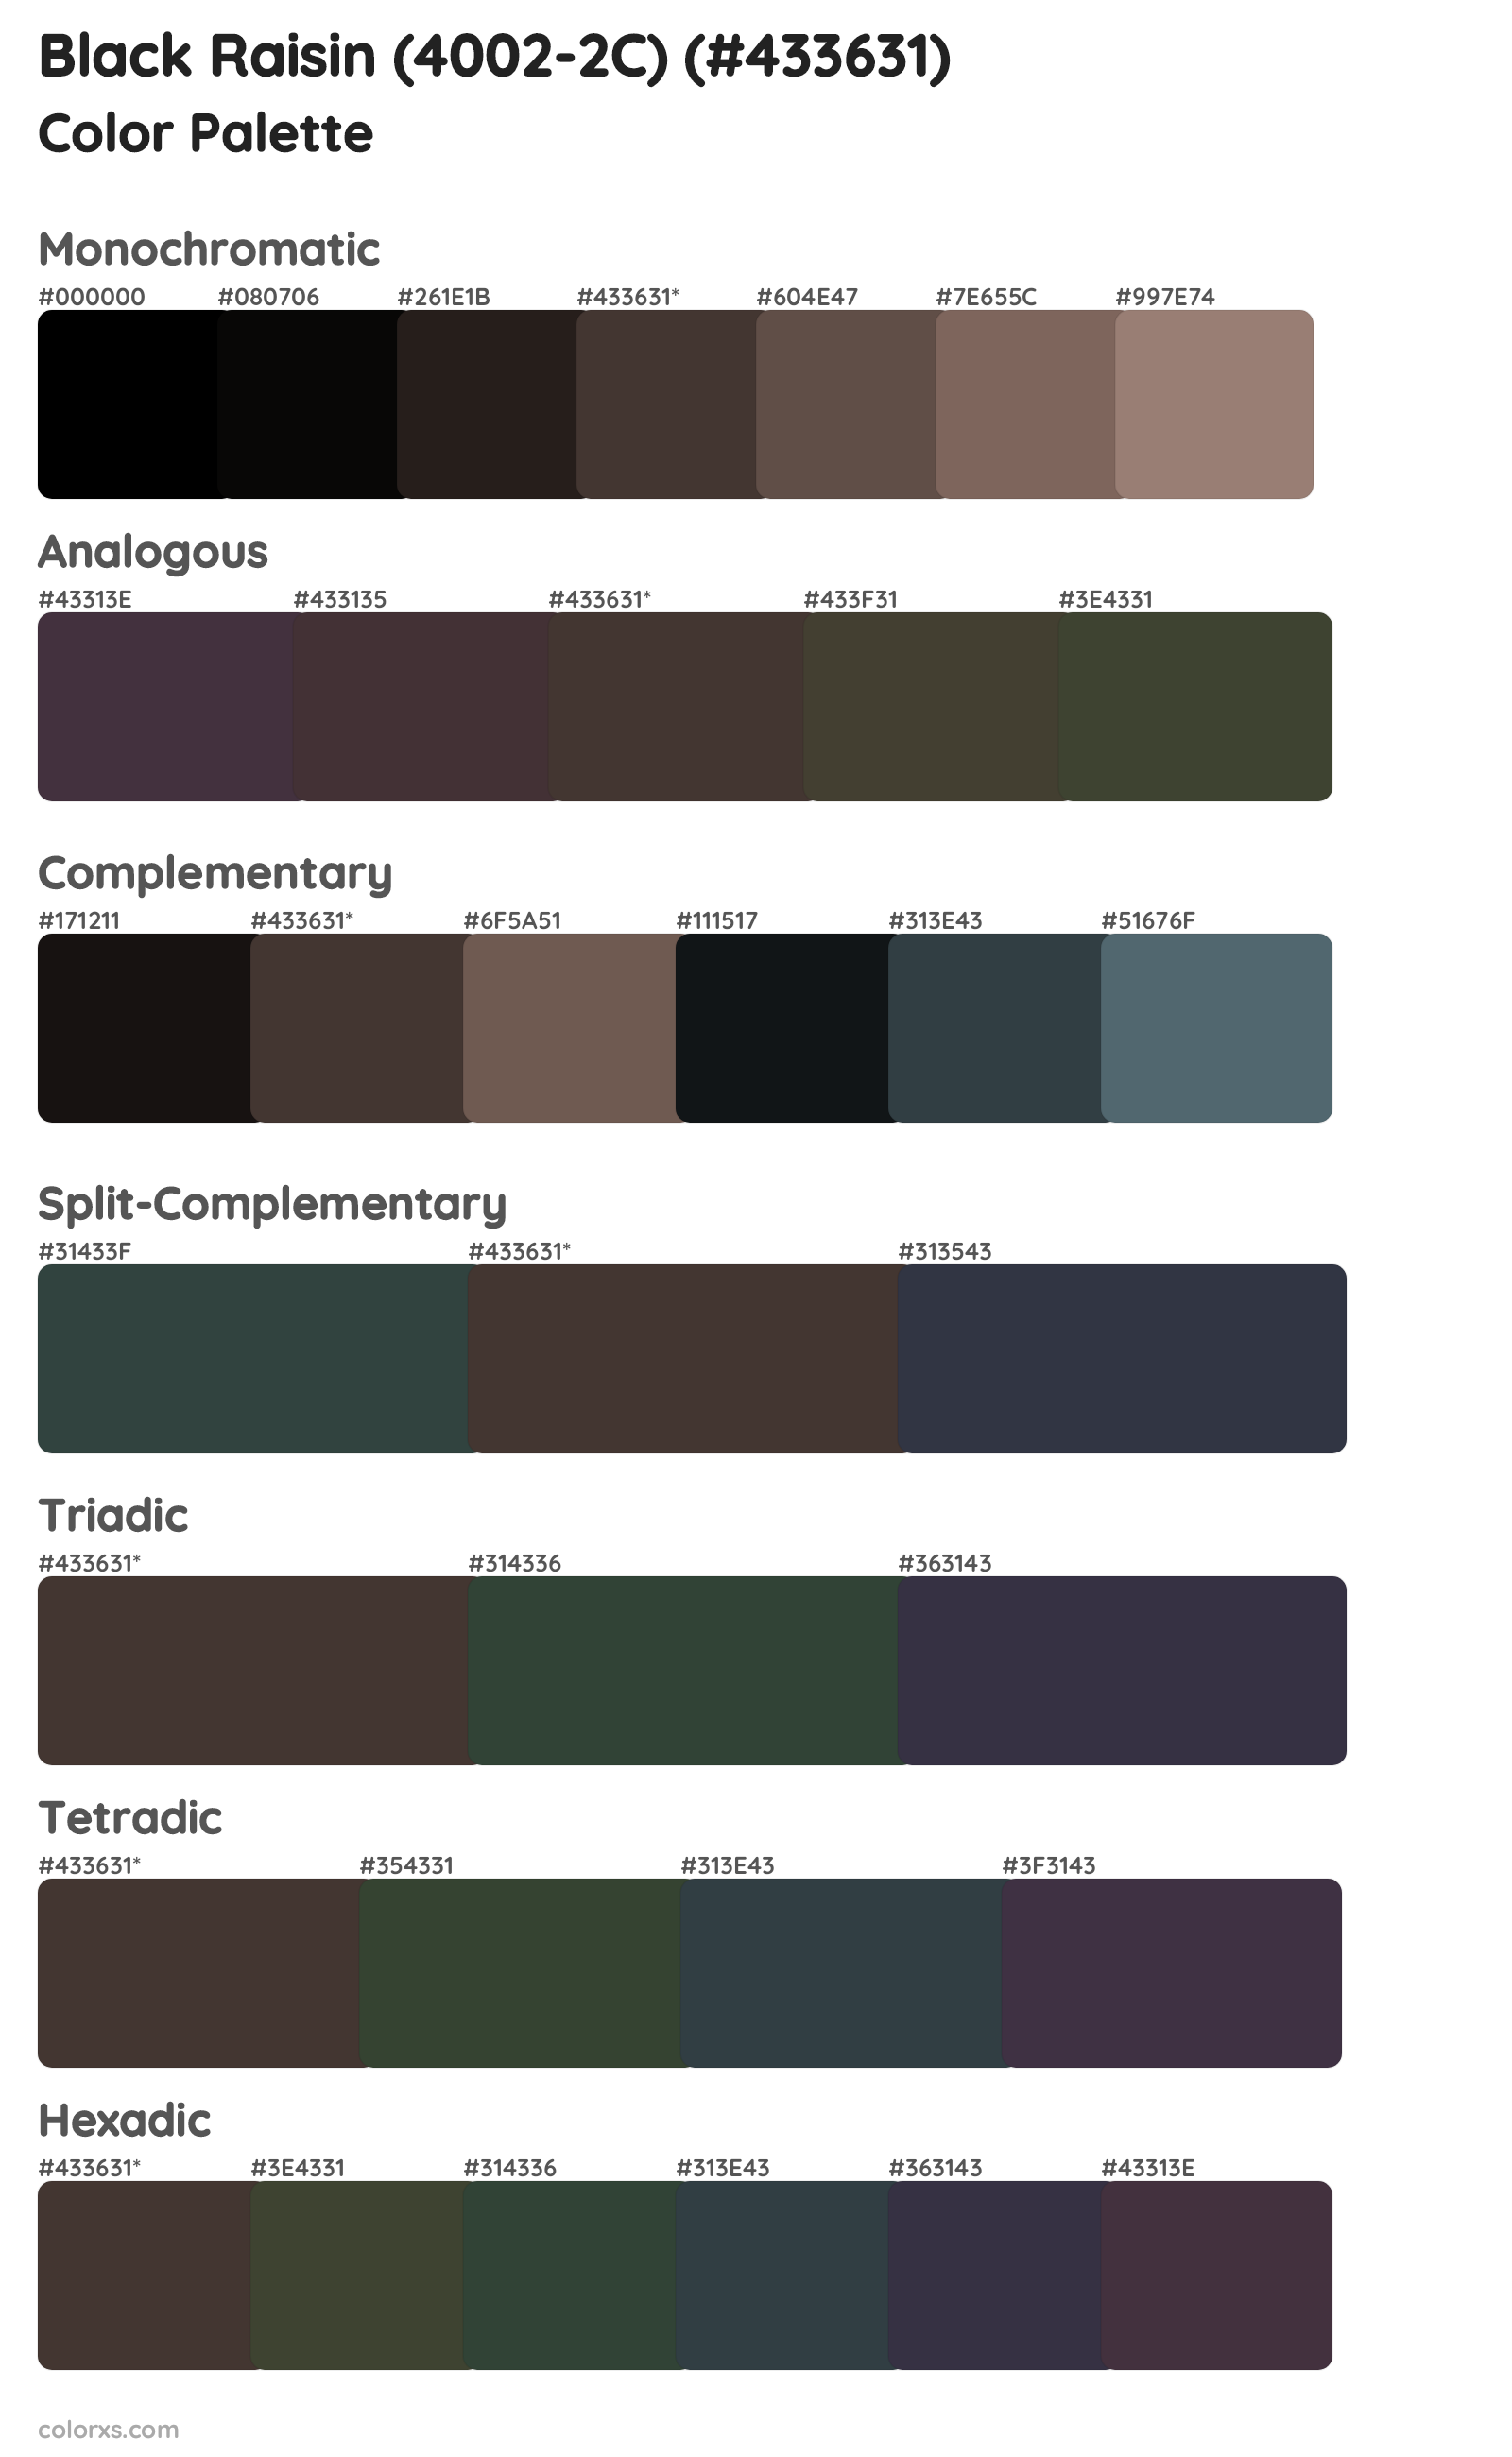 Black Raisin (4002-2C) Color Scheme Palettes